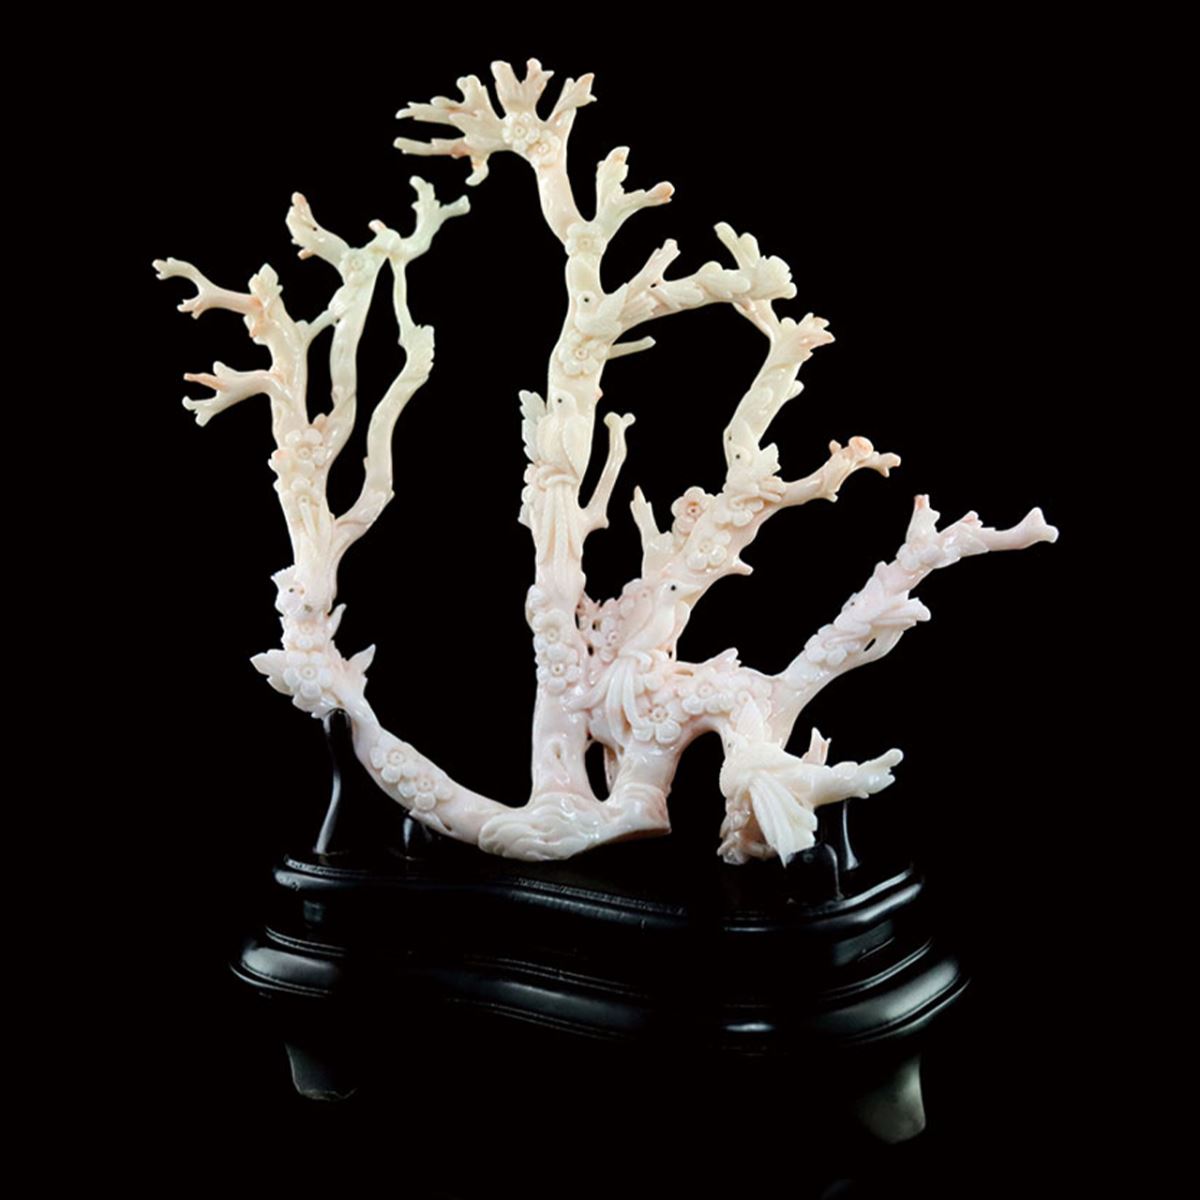 粉白珊瑚 MISU Coral 白珊瑚 White Coral